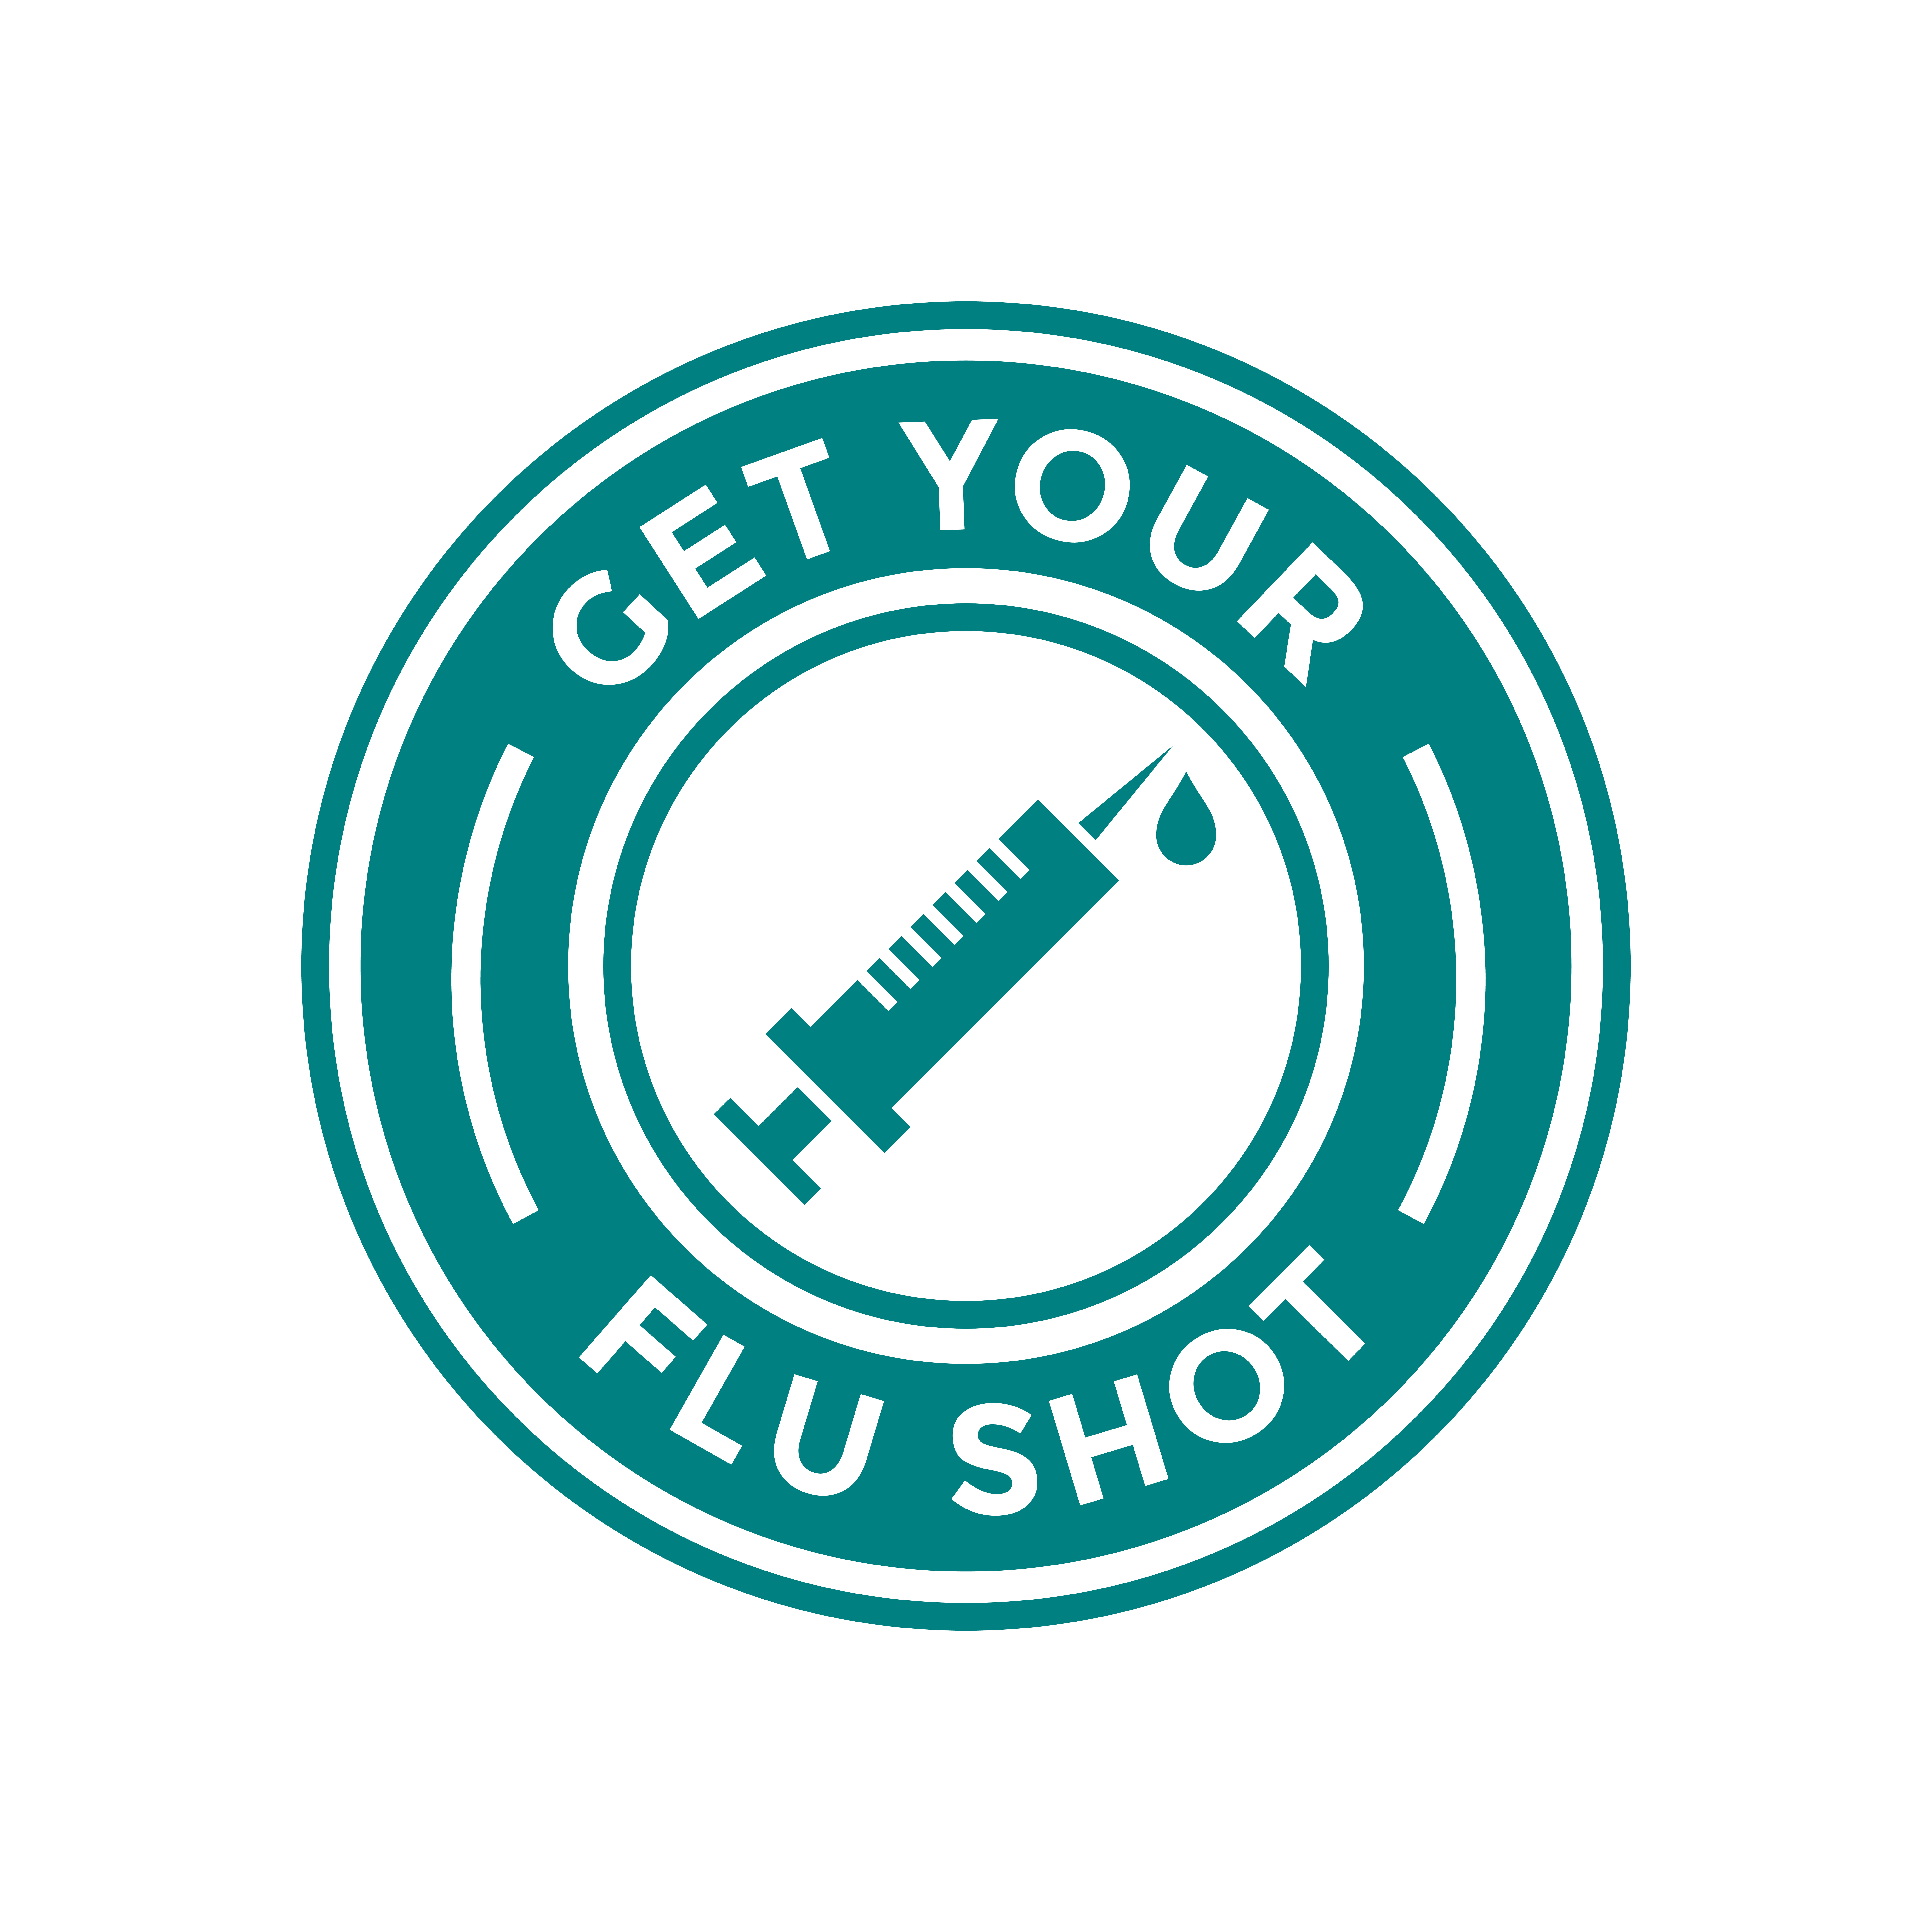 Flu vaccine importance